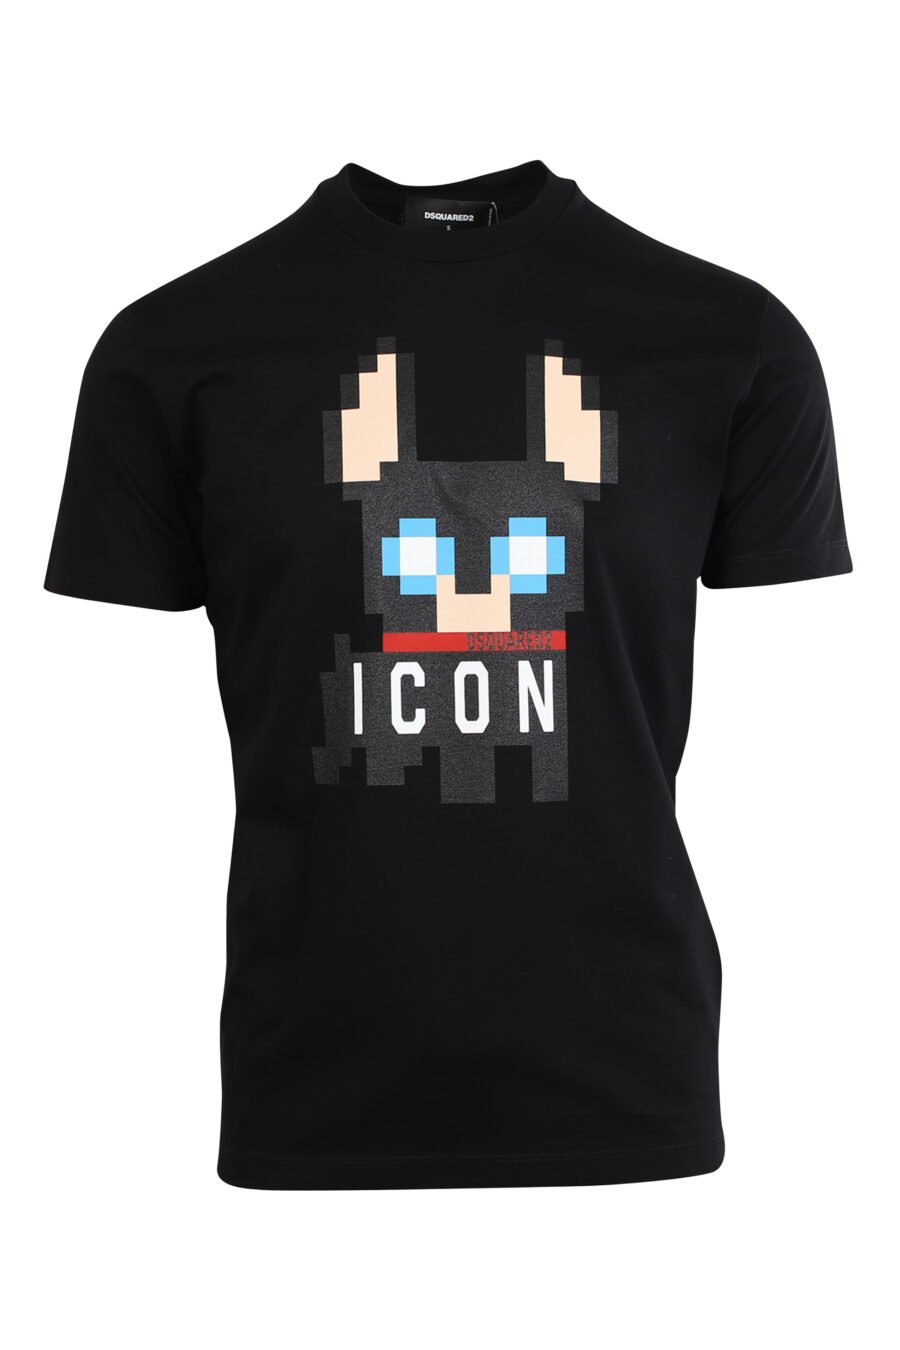 Black T-shirt with dog maxilogo "Pixeled" - 8052134980774